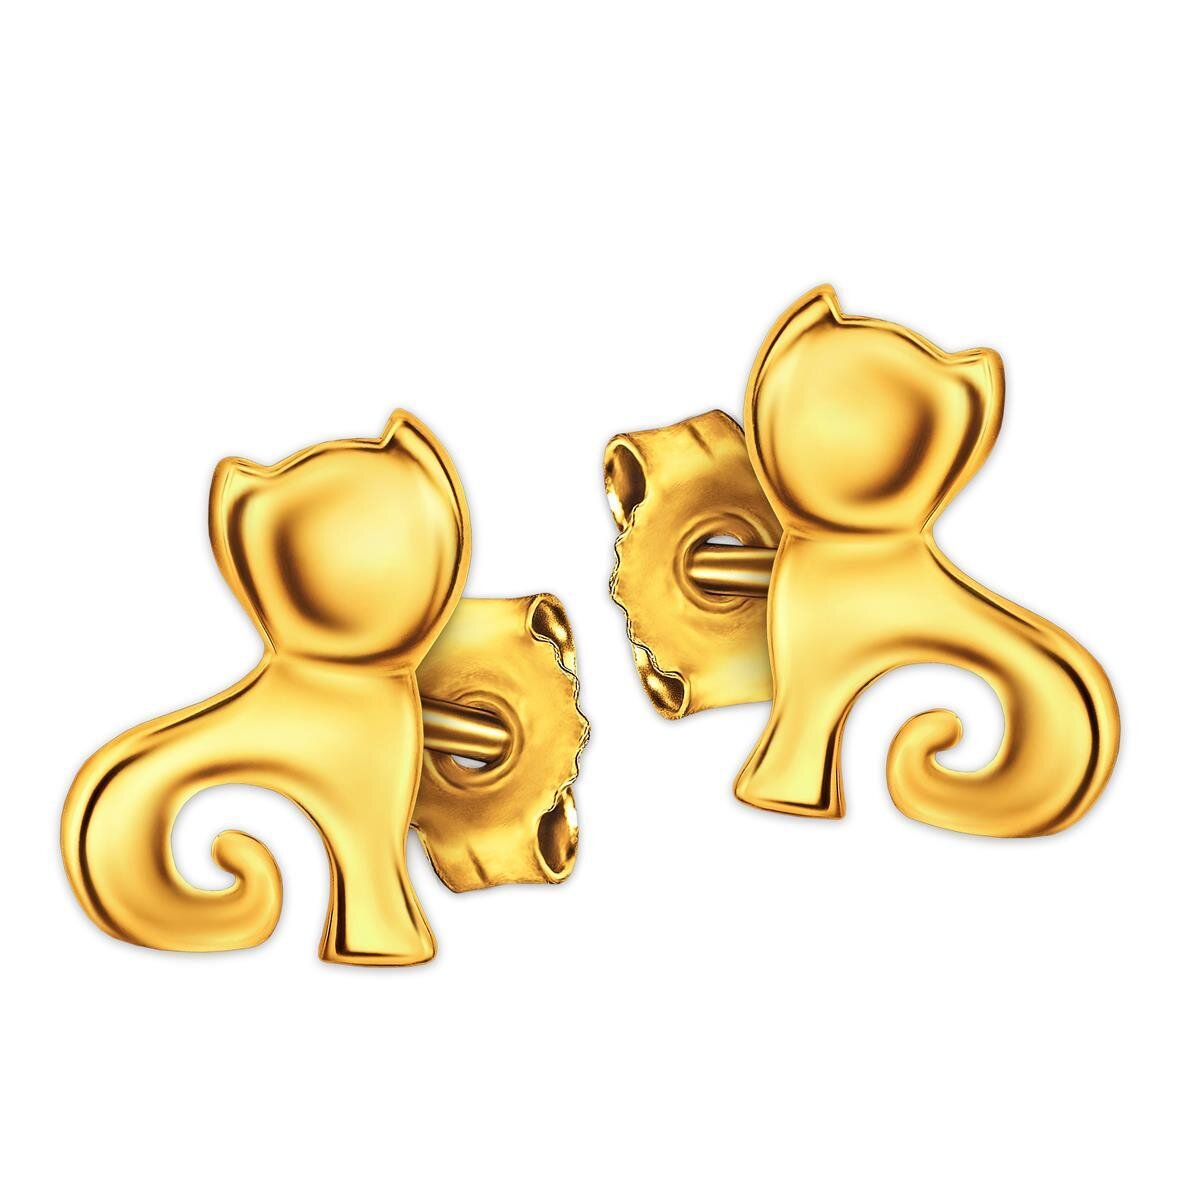 Goldene Ohrstecker kleine Katze schlicht mit Kringel glänzend 333 Gold